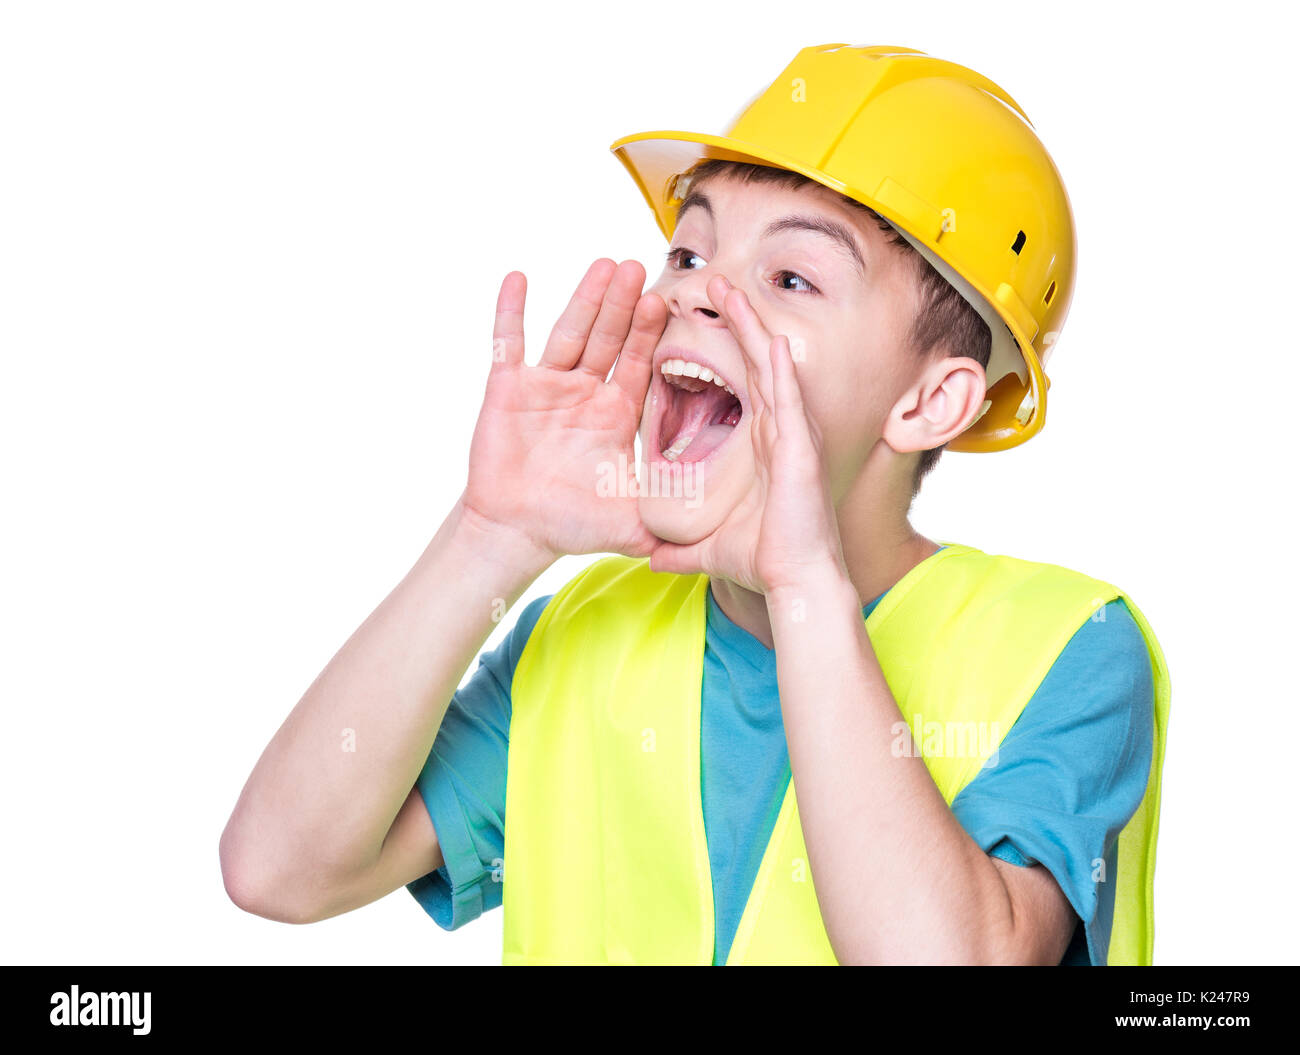 Ritratto emotivo del bello caucasian teen boy indossando giacca di sicurezza e casco giallo. Bambino felice urlando e guardando lontano, isolato su bianco Foto Stock